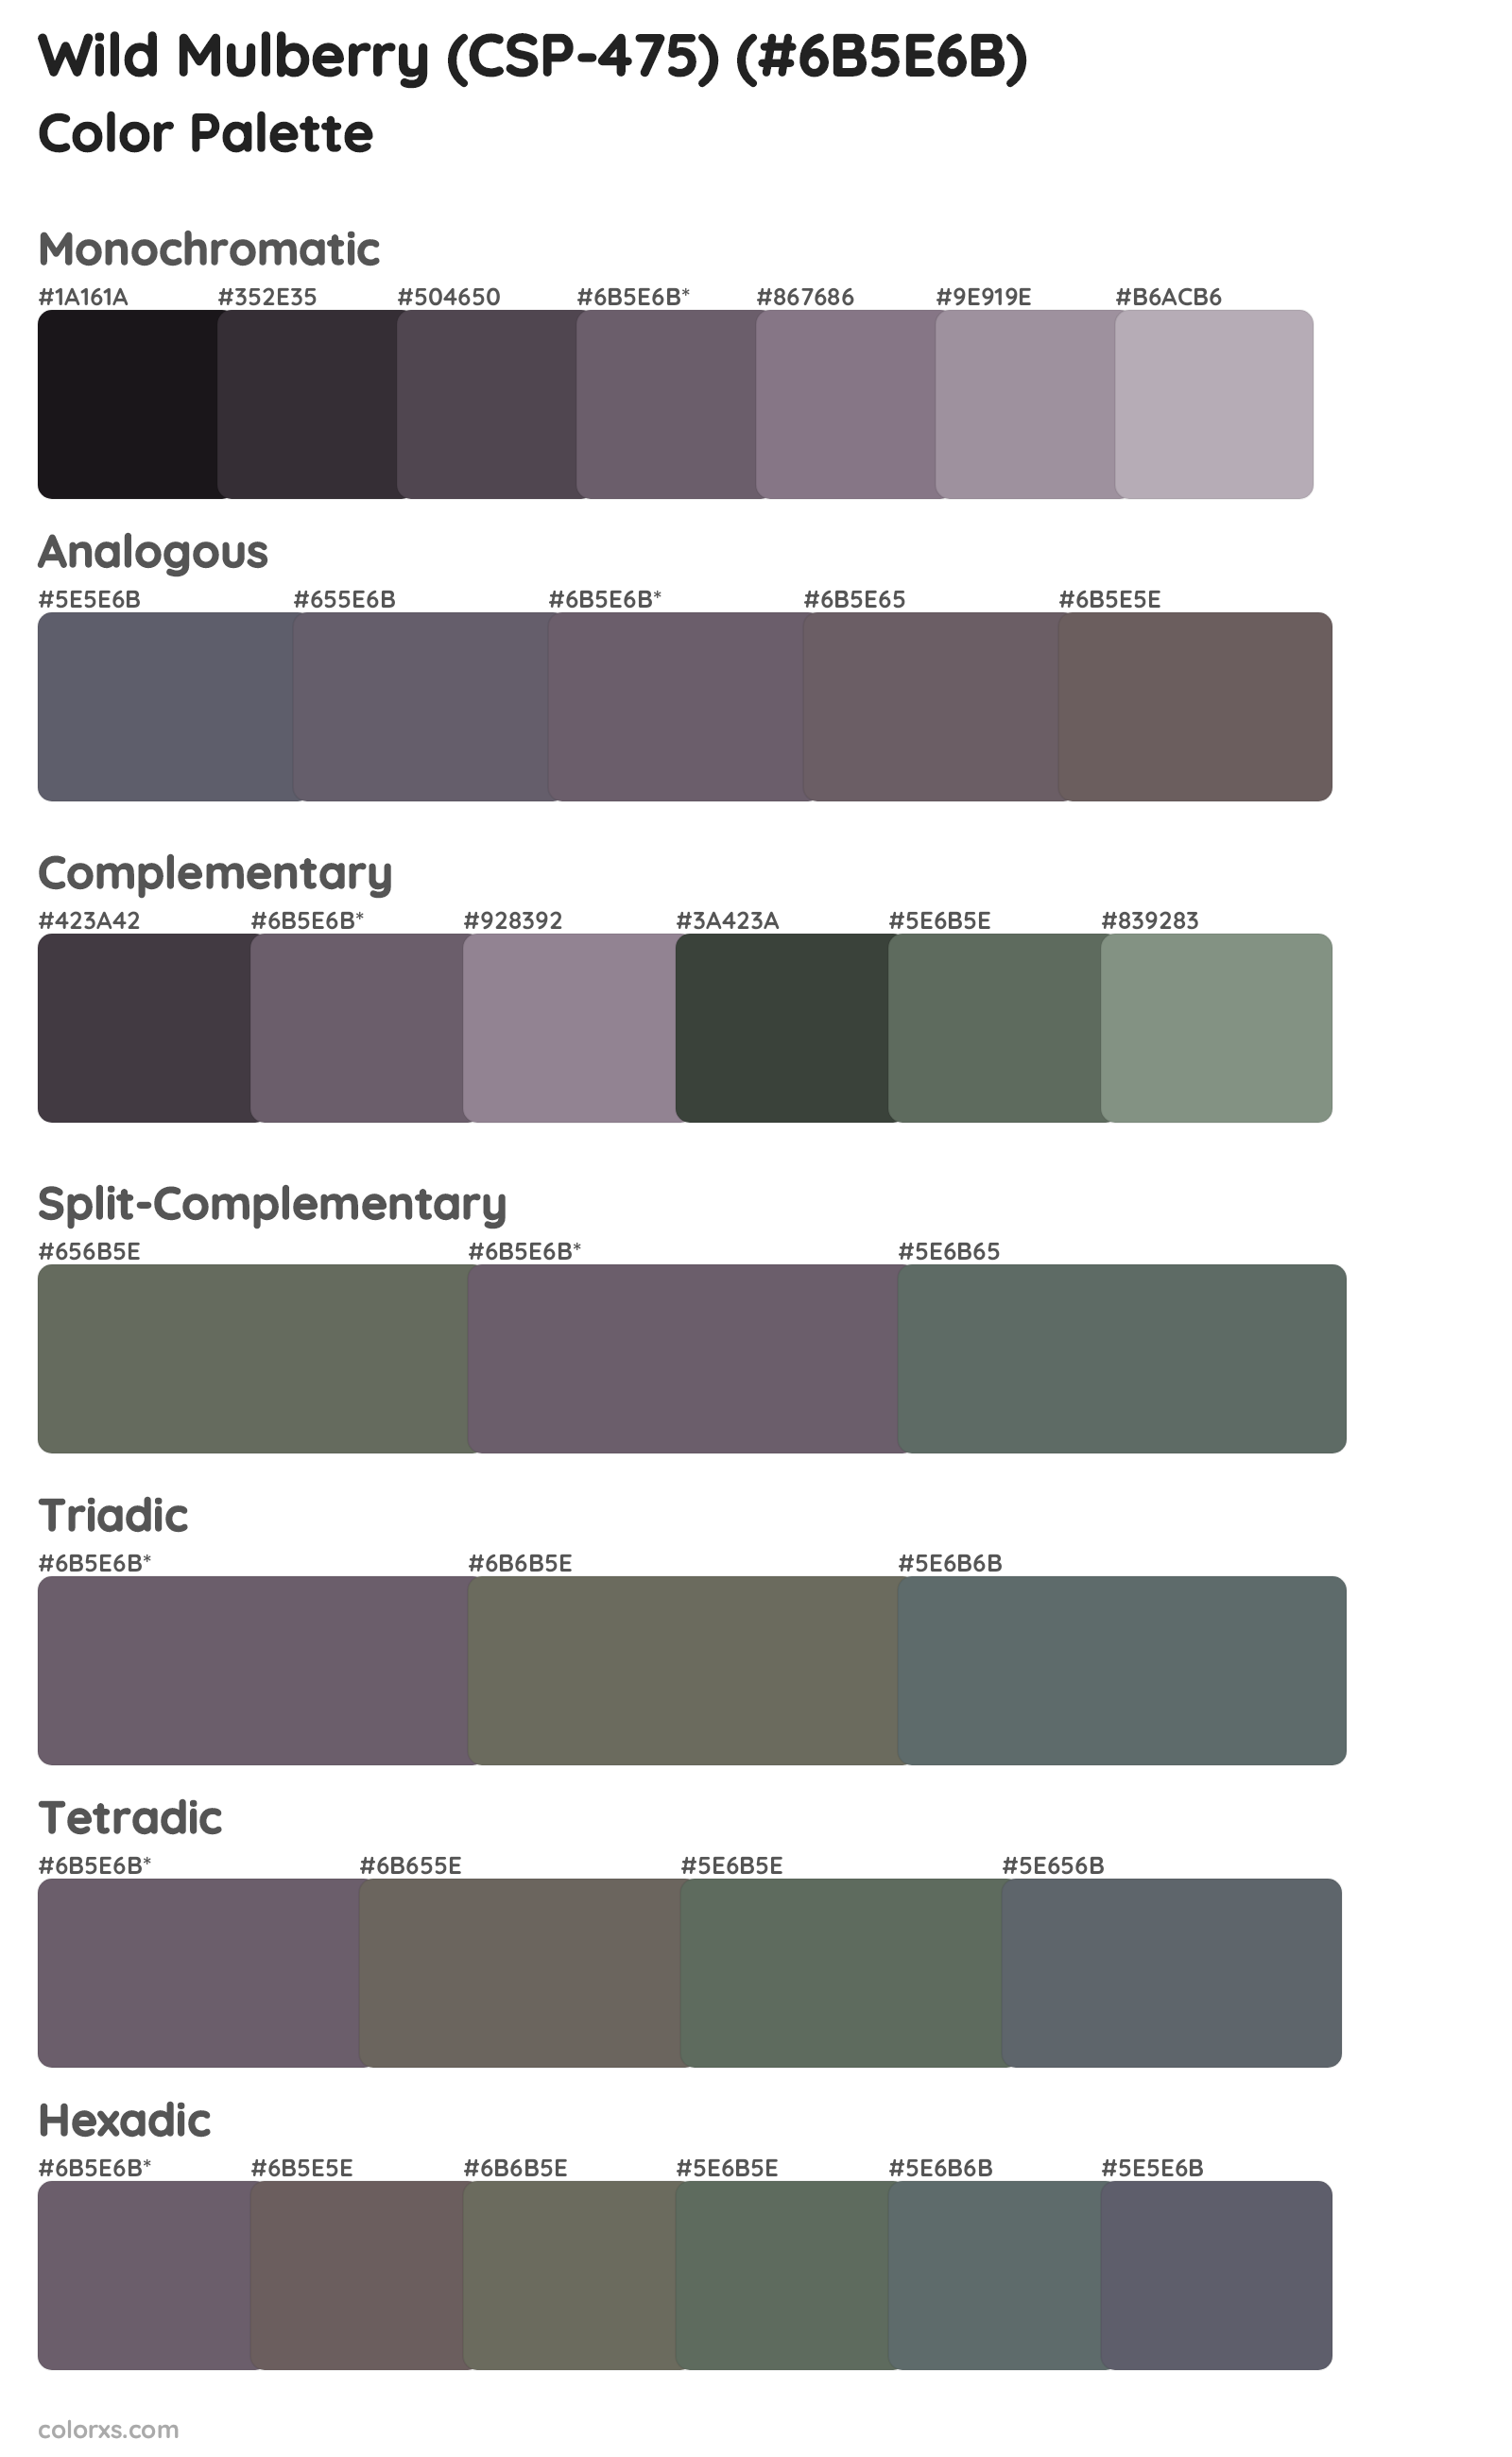 Wild Mulberry (CSP-475) Color Scheme Palettes